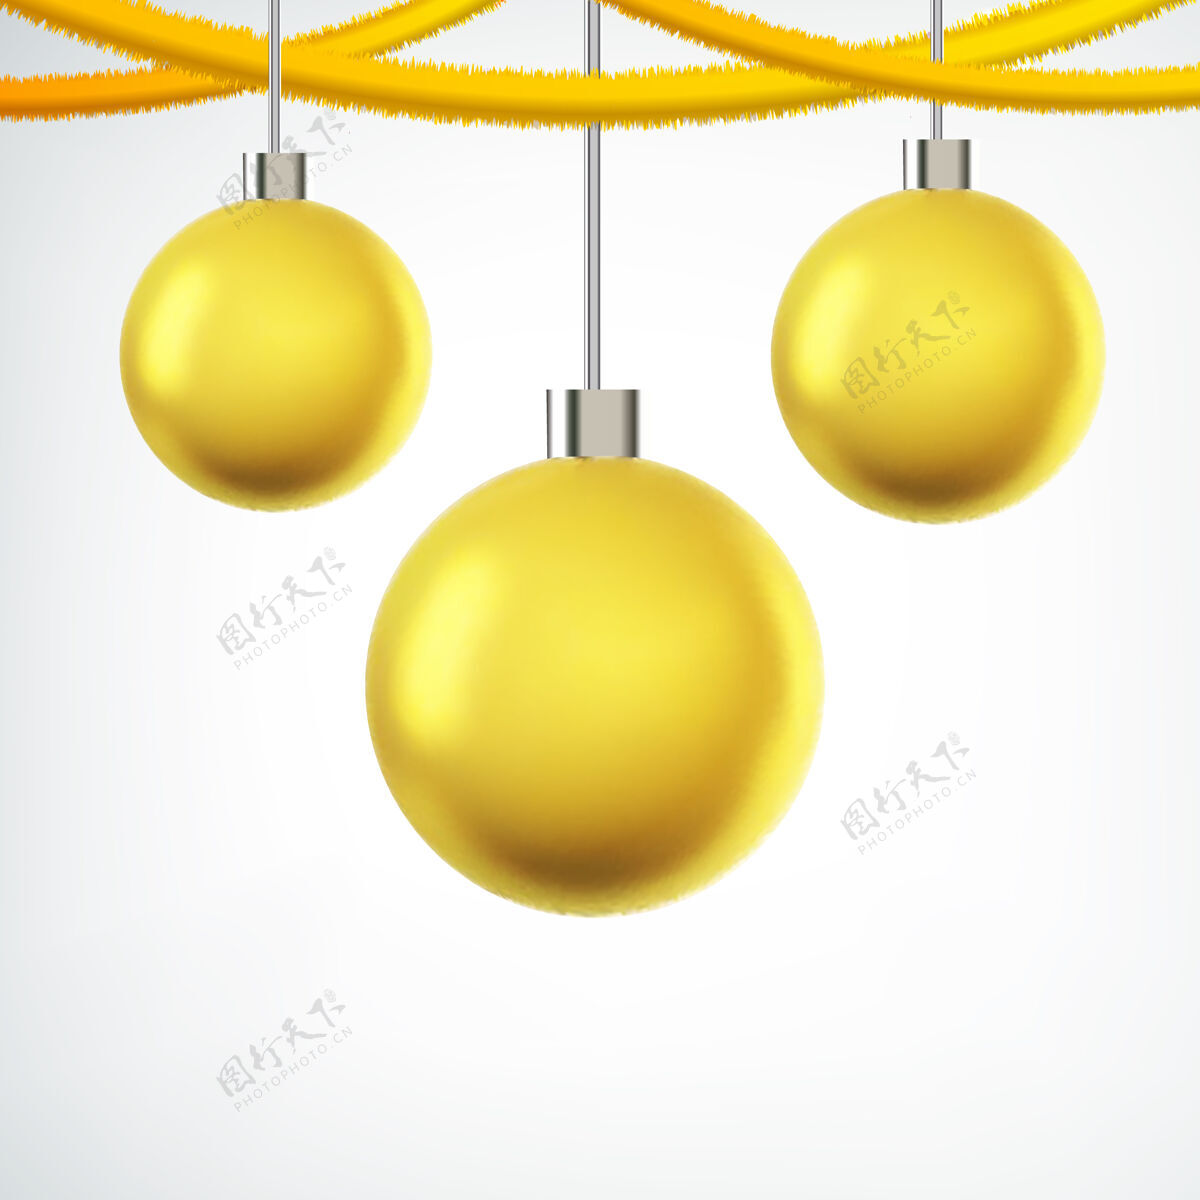 塑料树上挂着黄色的圣诞球和白色的丝带玻璃悬挂树